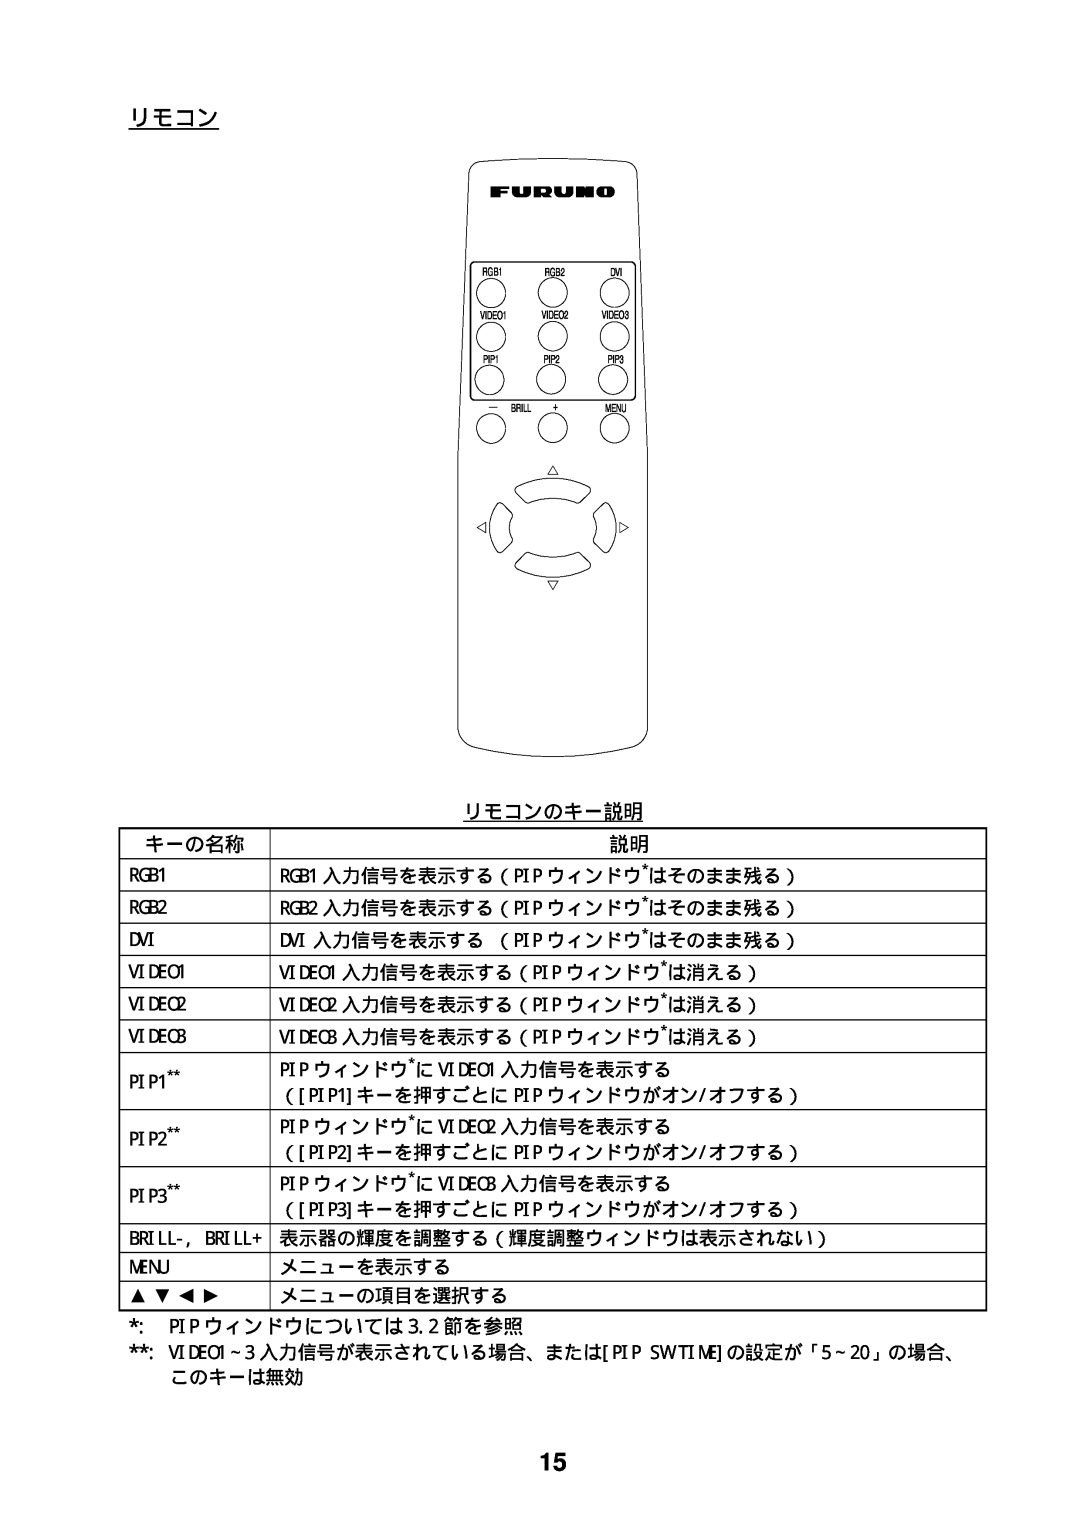 Furuno MU-170C manual リモコンのキー説明, キーの名称, PIP ウィンドウについては 3.2 節を参照 